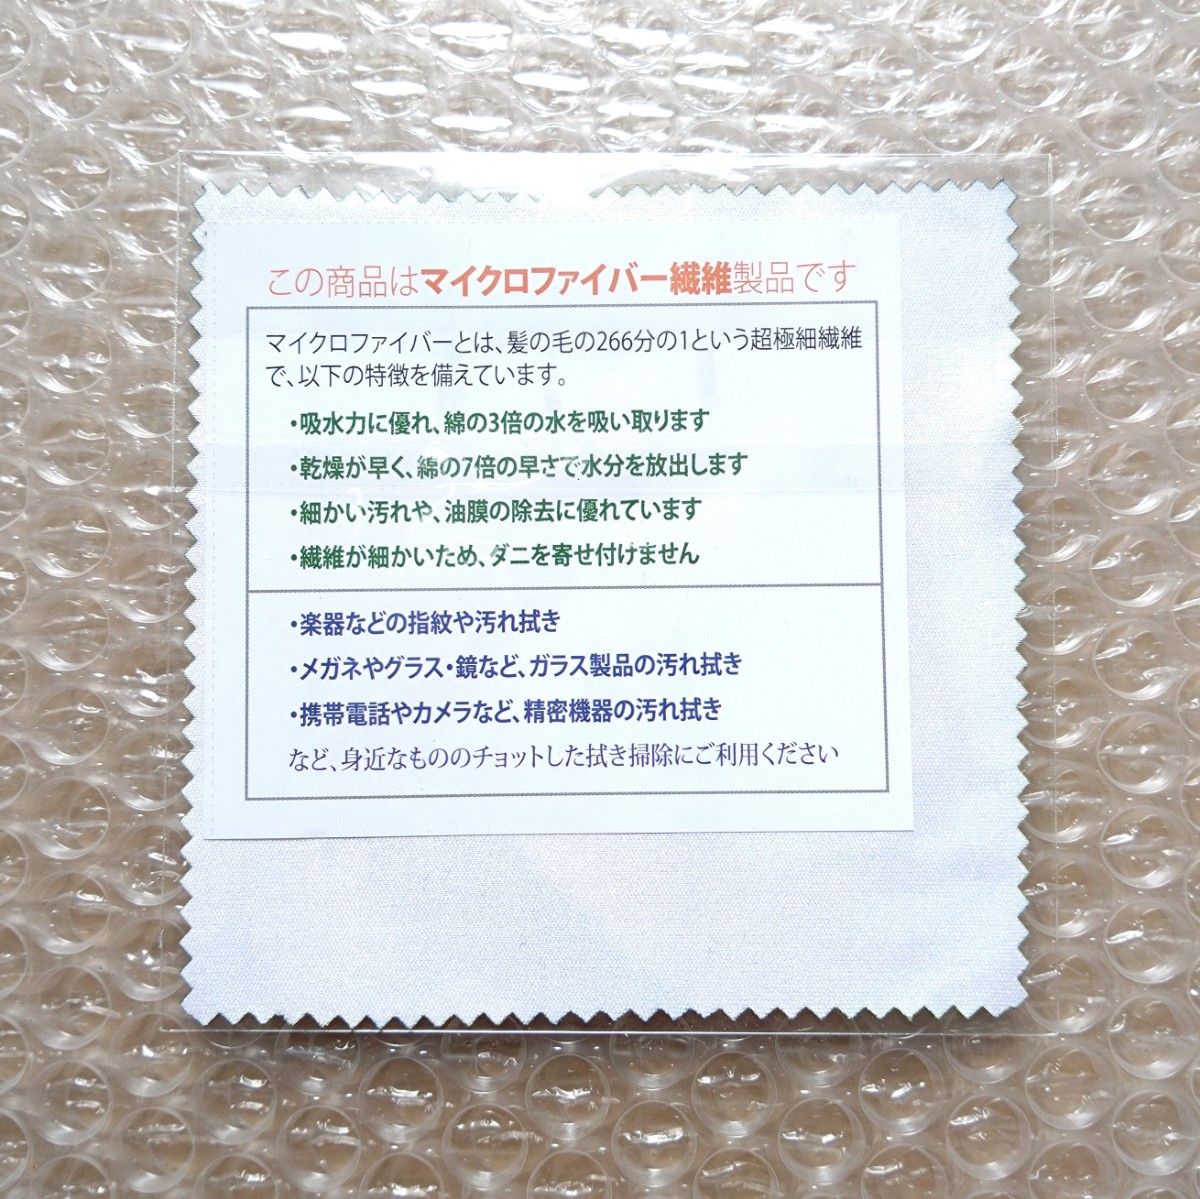 【非売品】HMV特典マイクロファイバークロス  真・女神転生III NOCTURNE サウンドコレクション サウンドトラック 3 